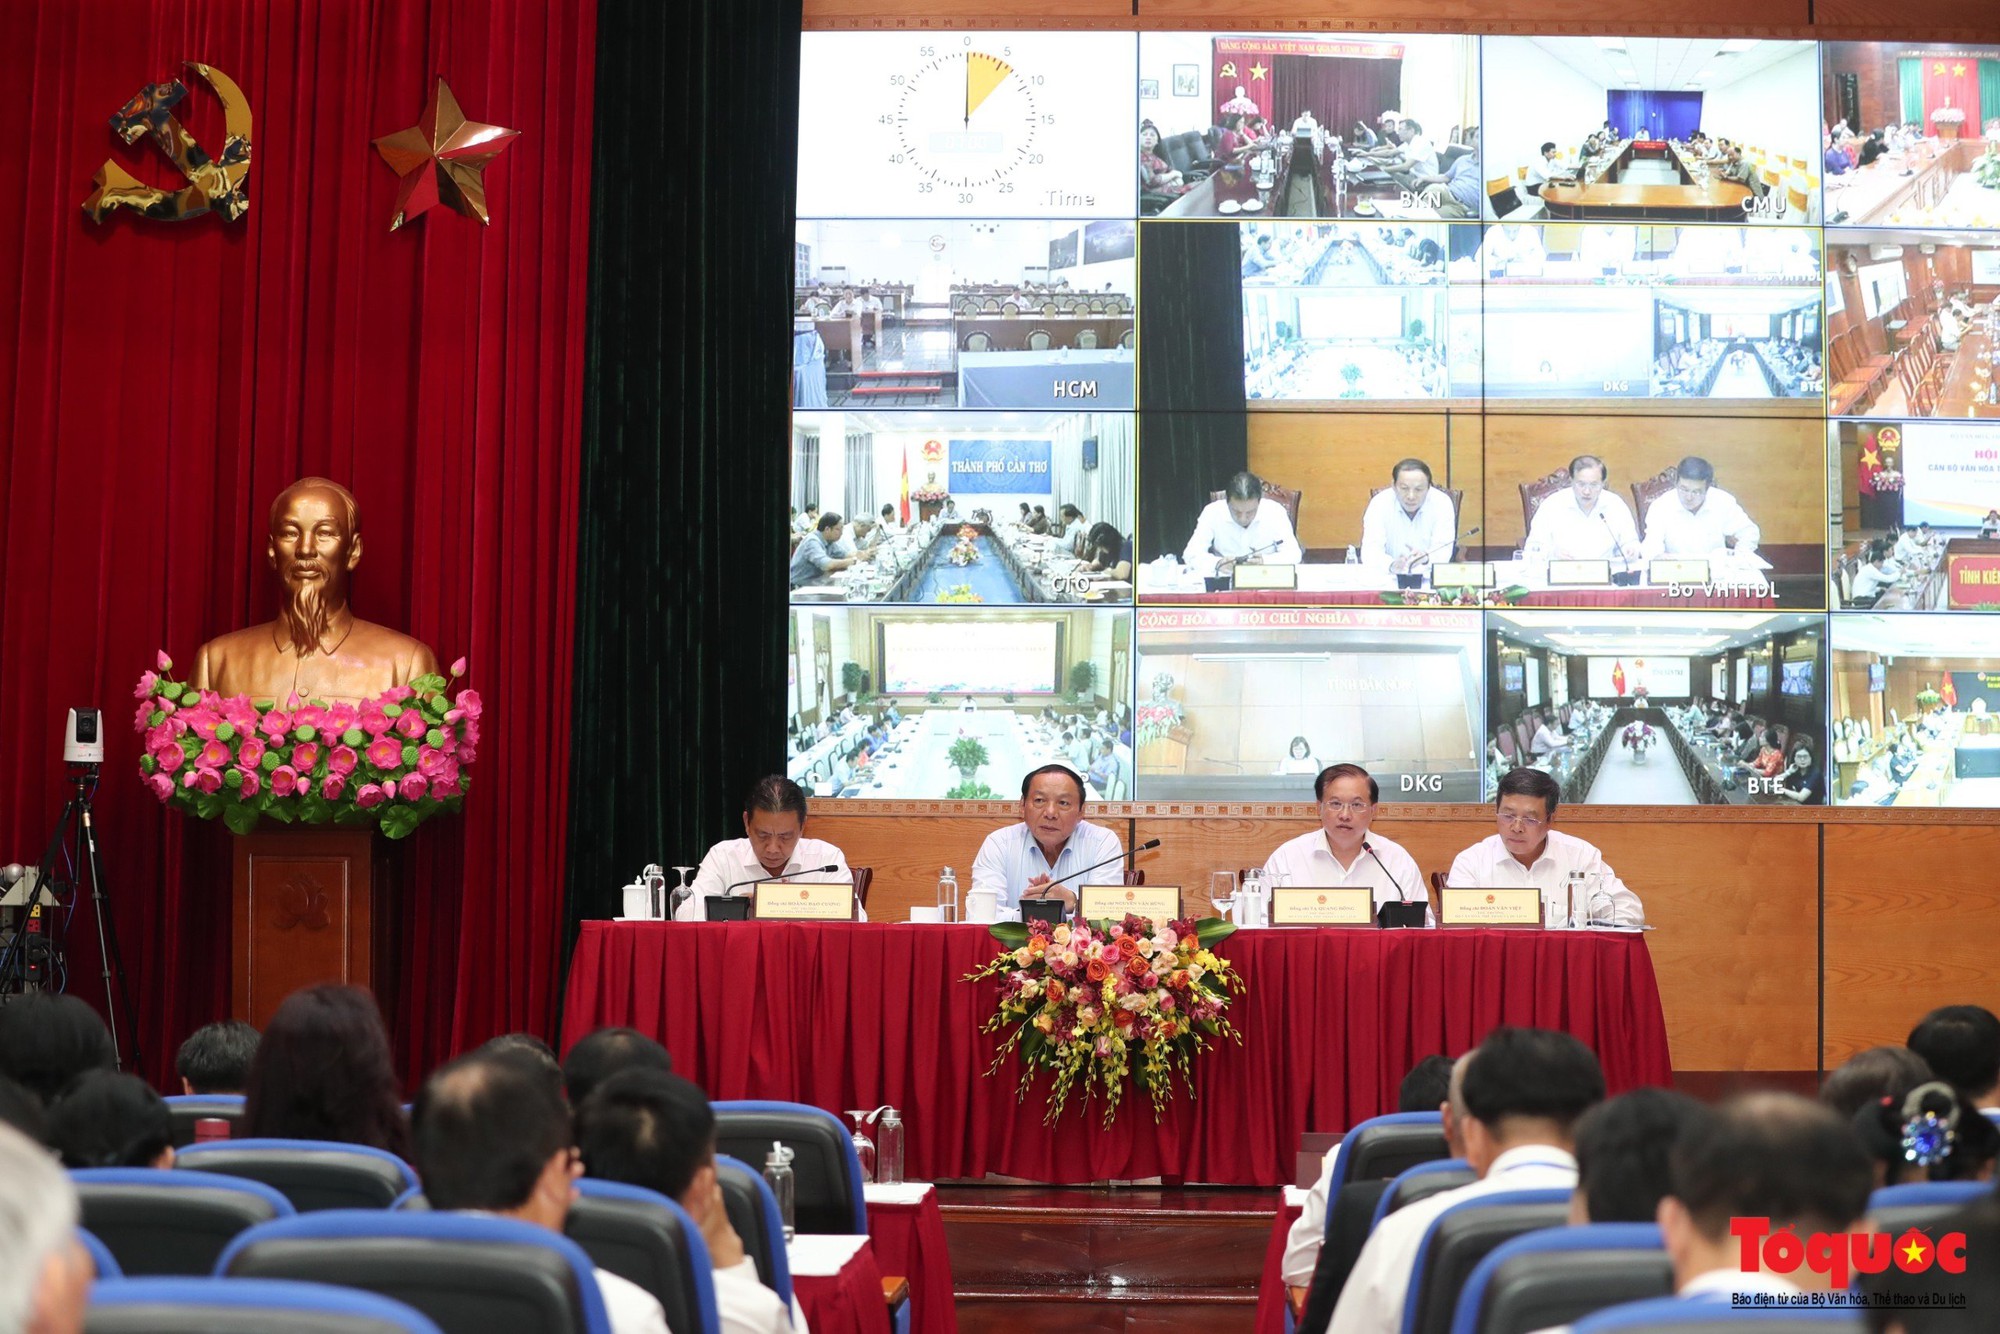 Bộ trưởng Nguyễn Văn Hùng: "Nếu khó đã chùn bước thì đó không phải là cán bộ ngành Văn hóa"